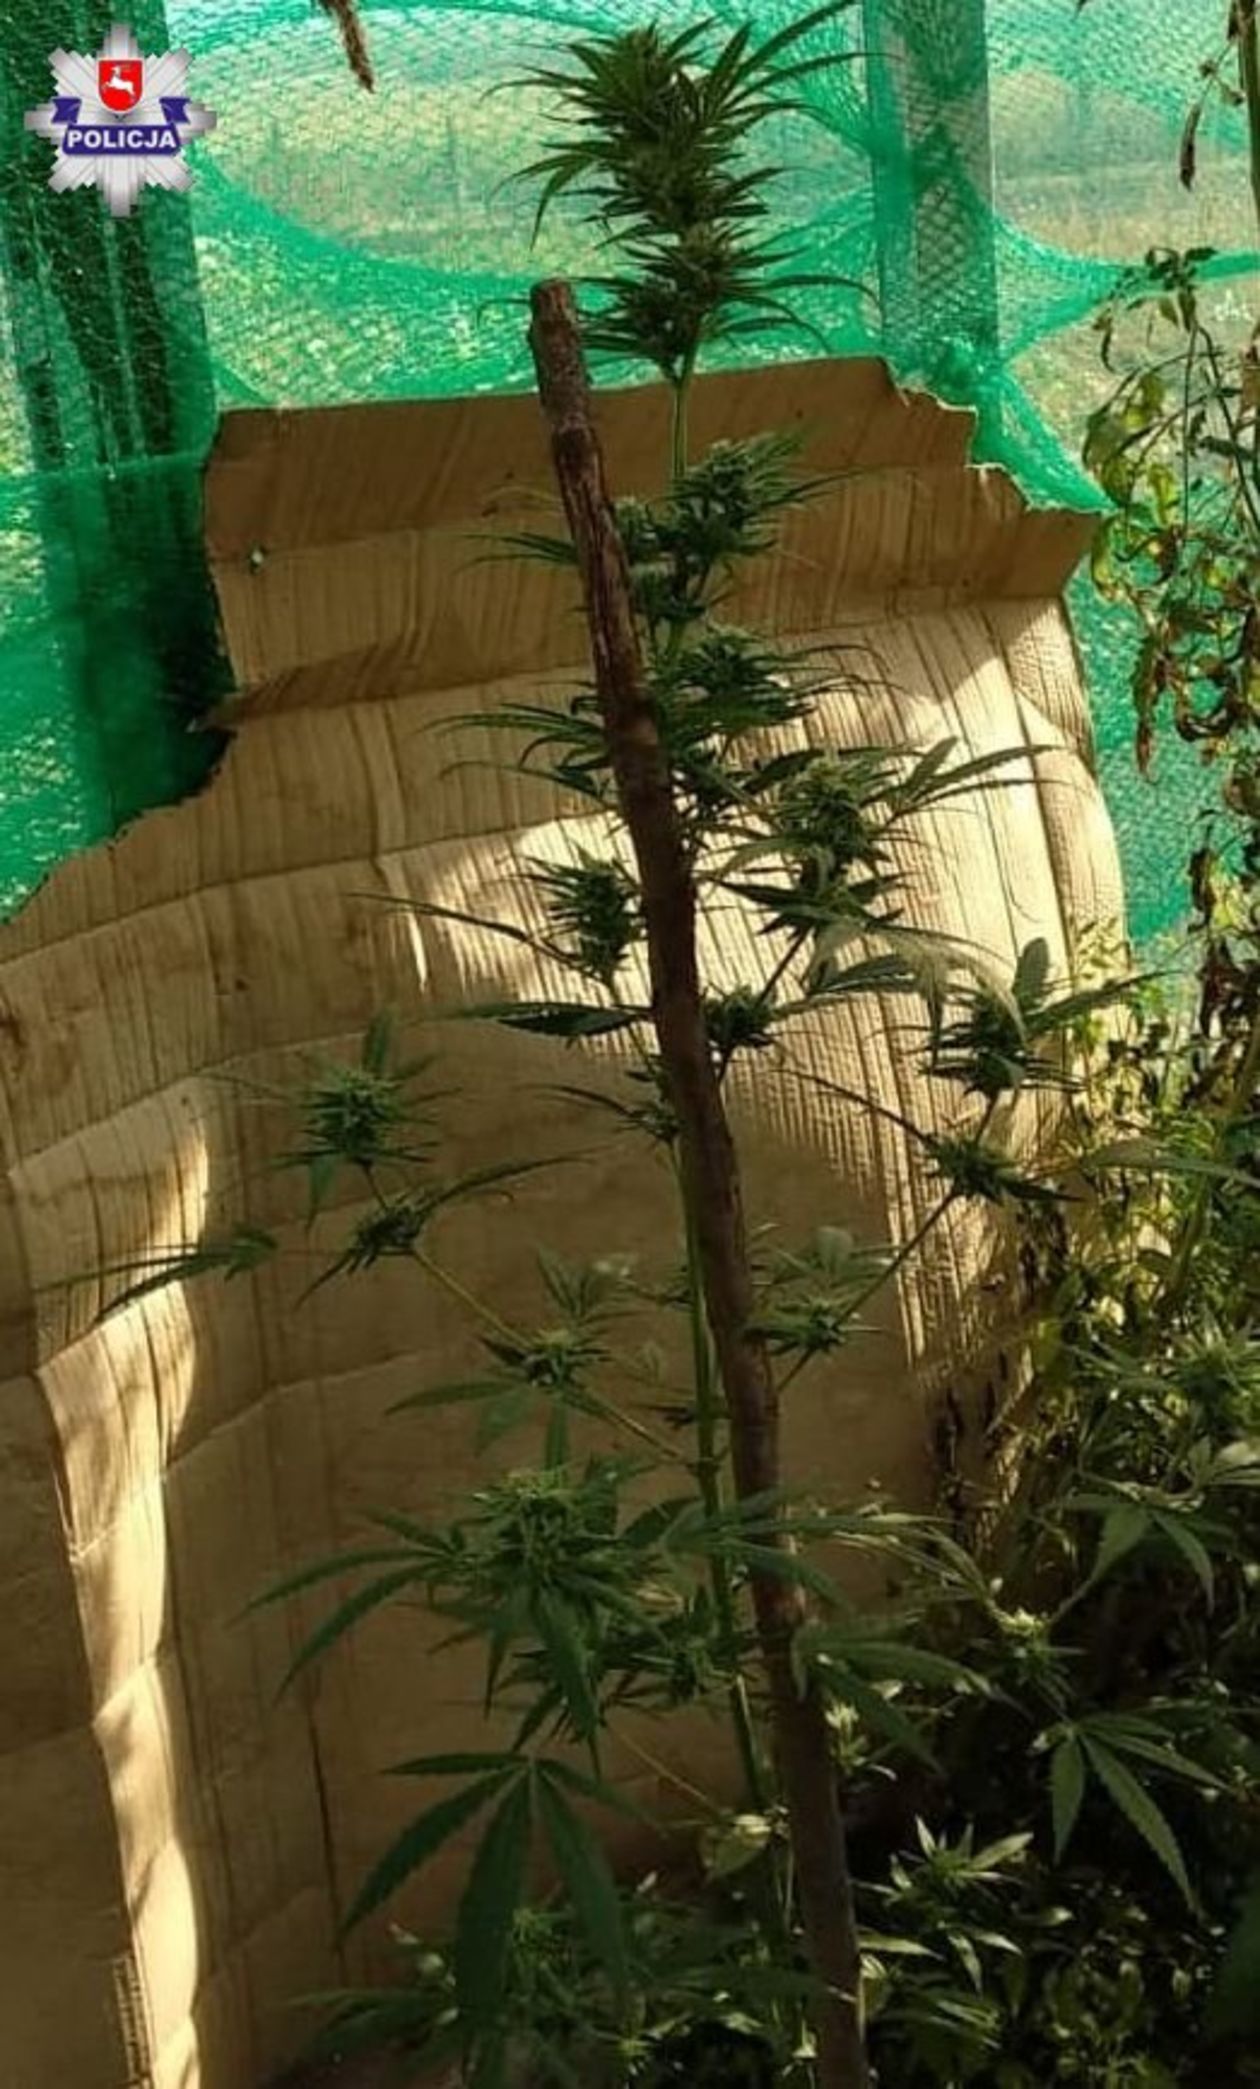  Leśna plantacja marihuany w gminie Ulhówek (zdjęcie 1) - Autor: Policja